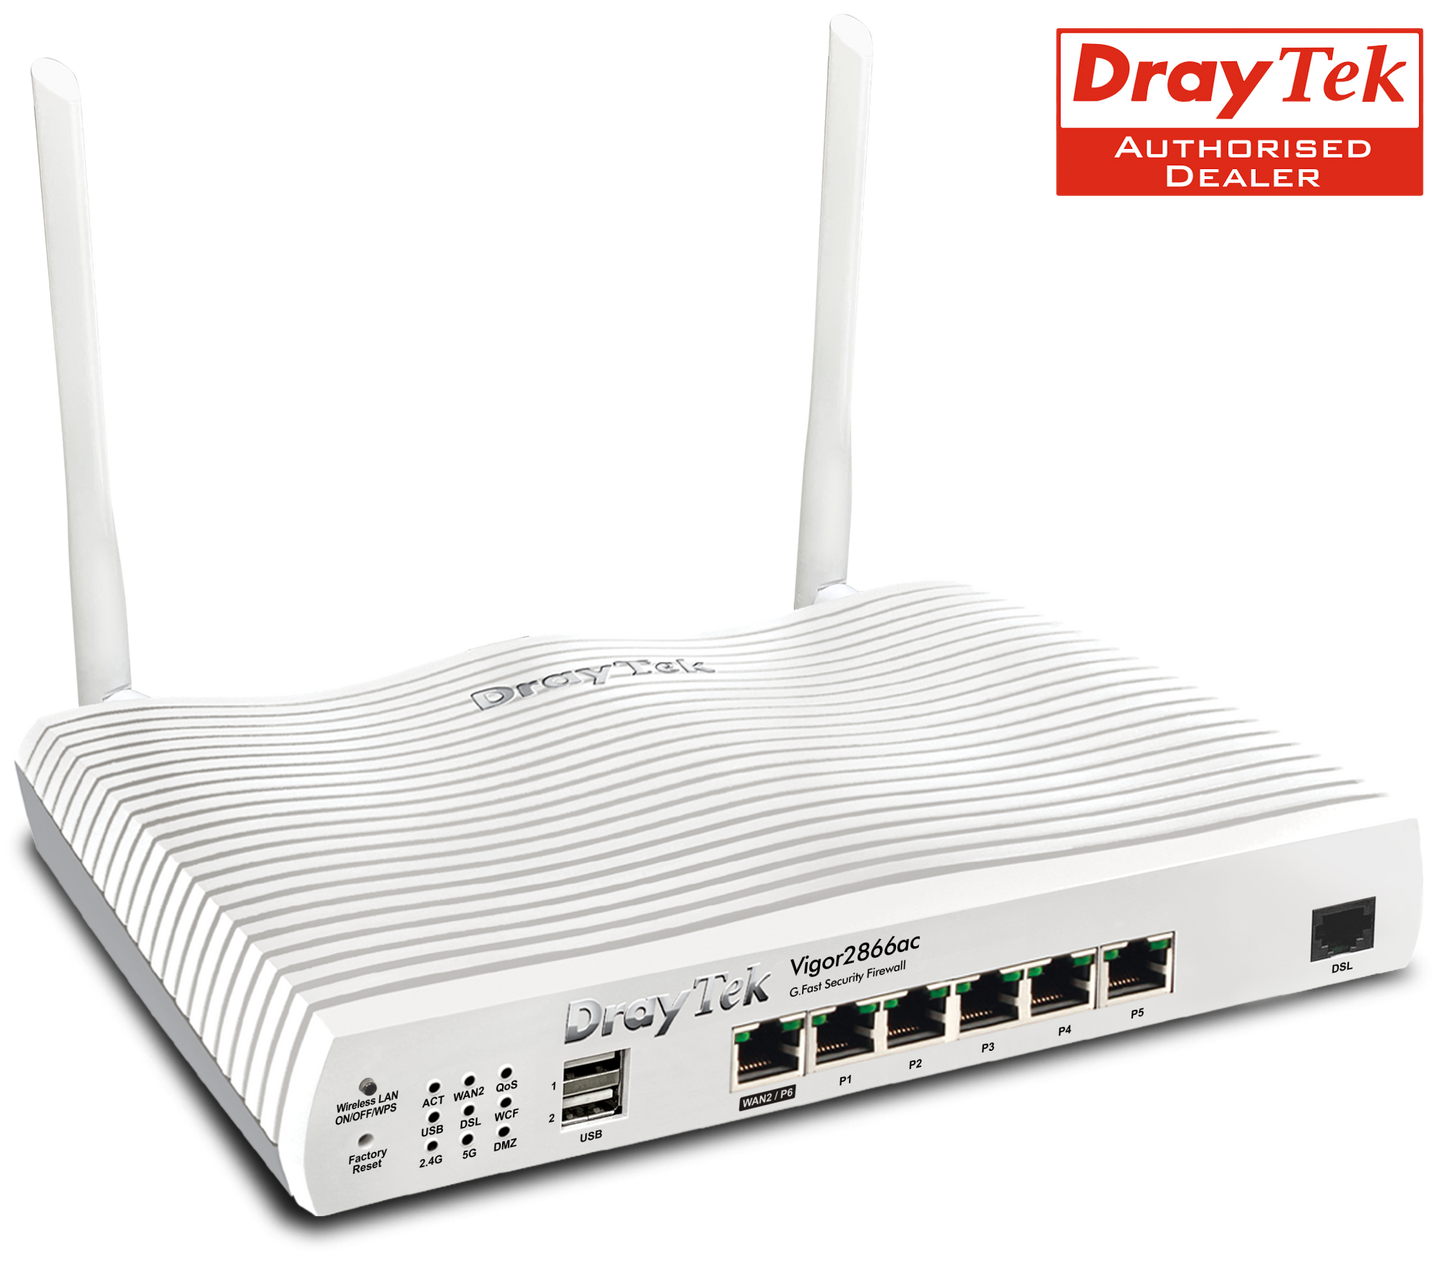 Draytek Vigor 2866ac VDSL, G.Fast Router, Firewall, Wi-Fi 5 Router